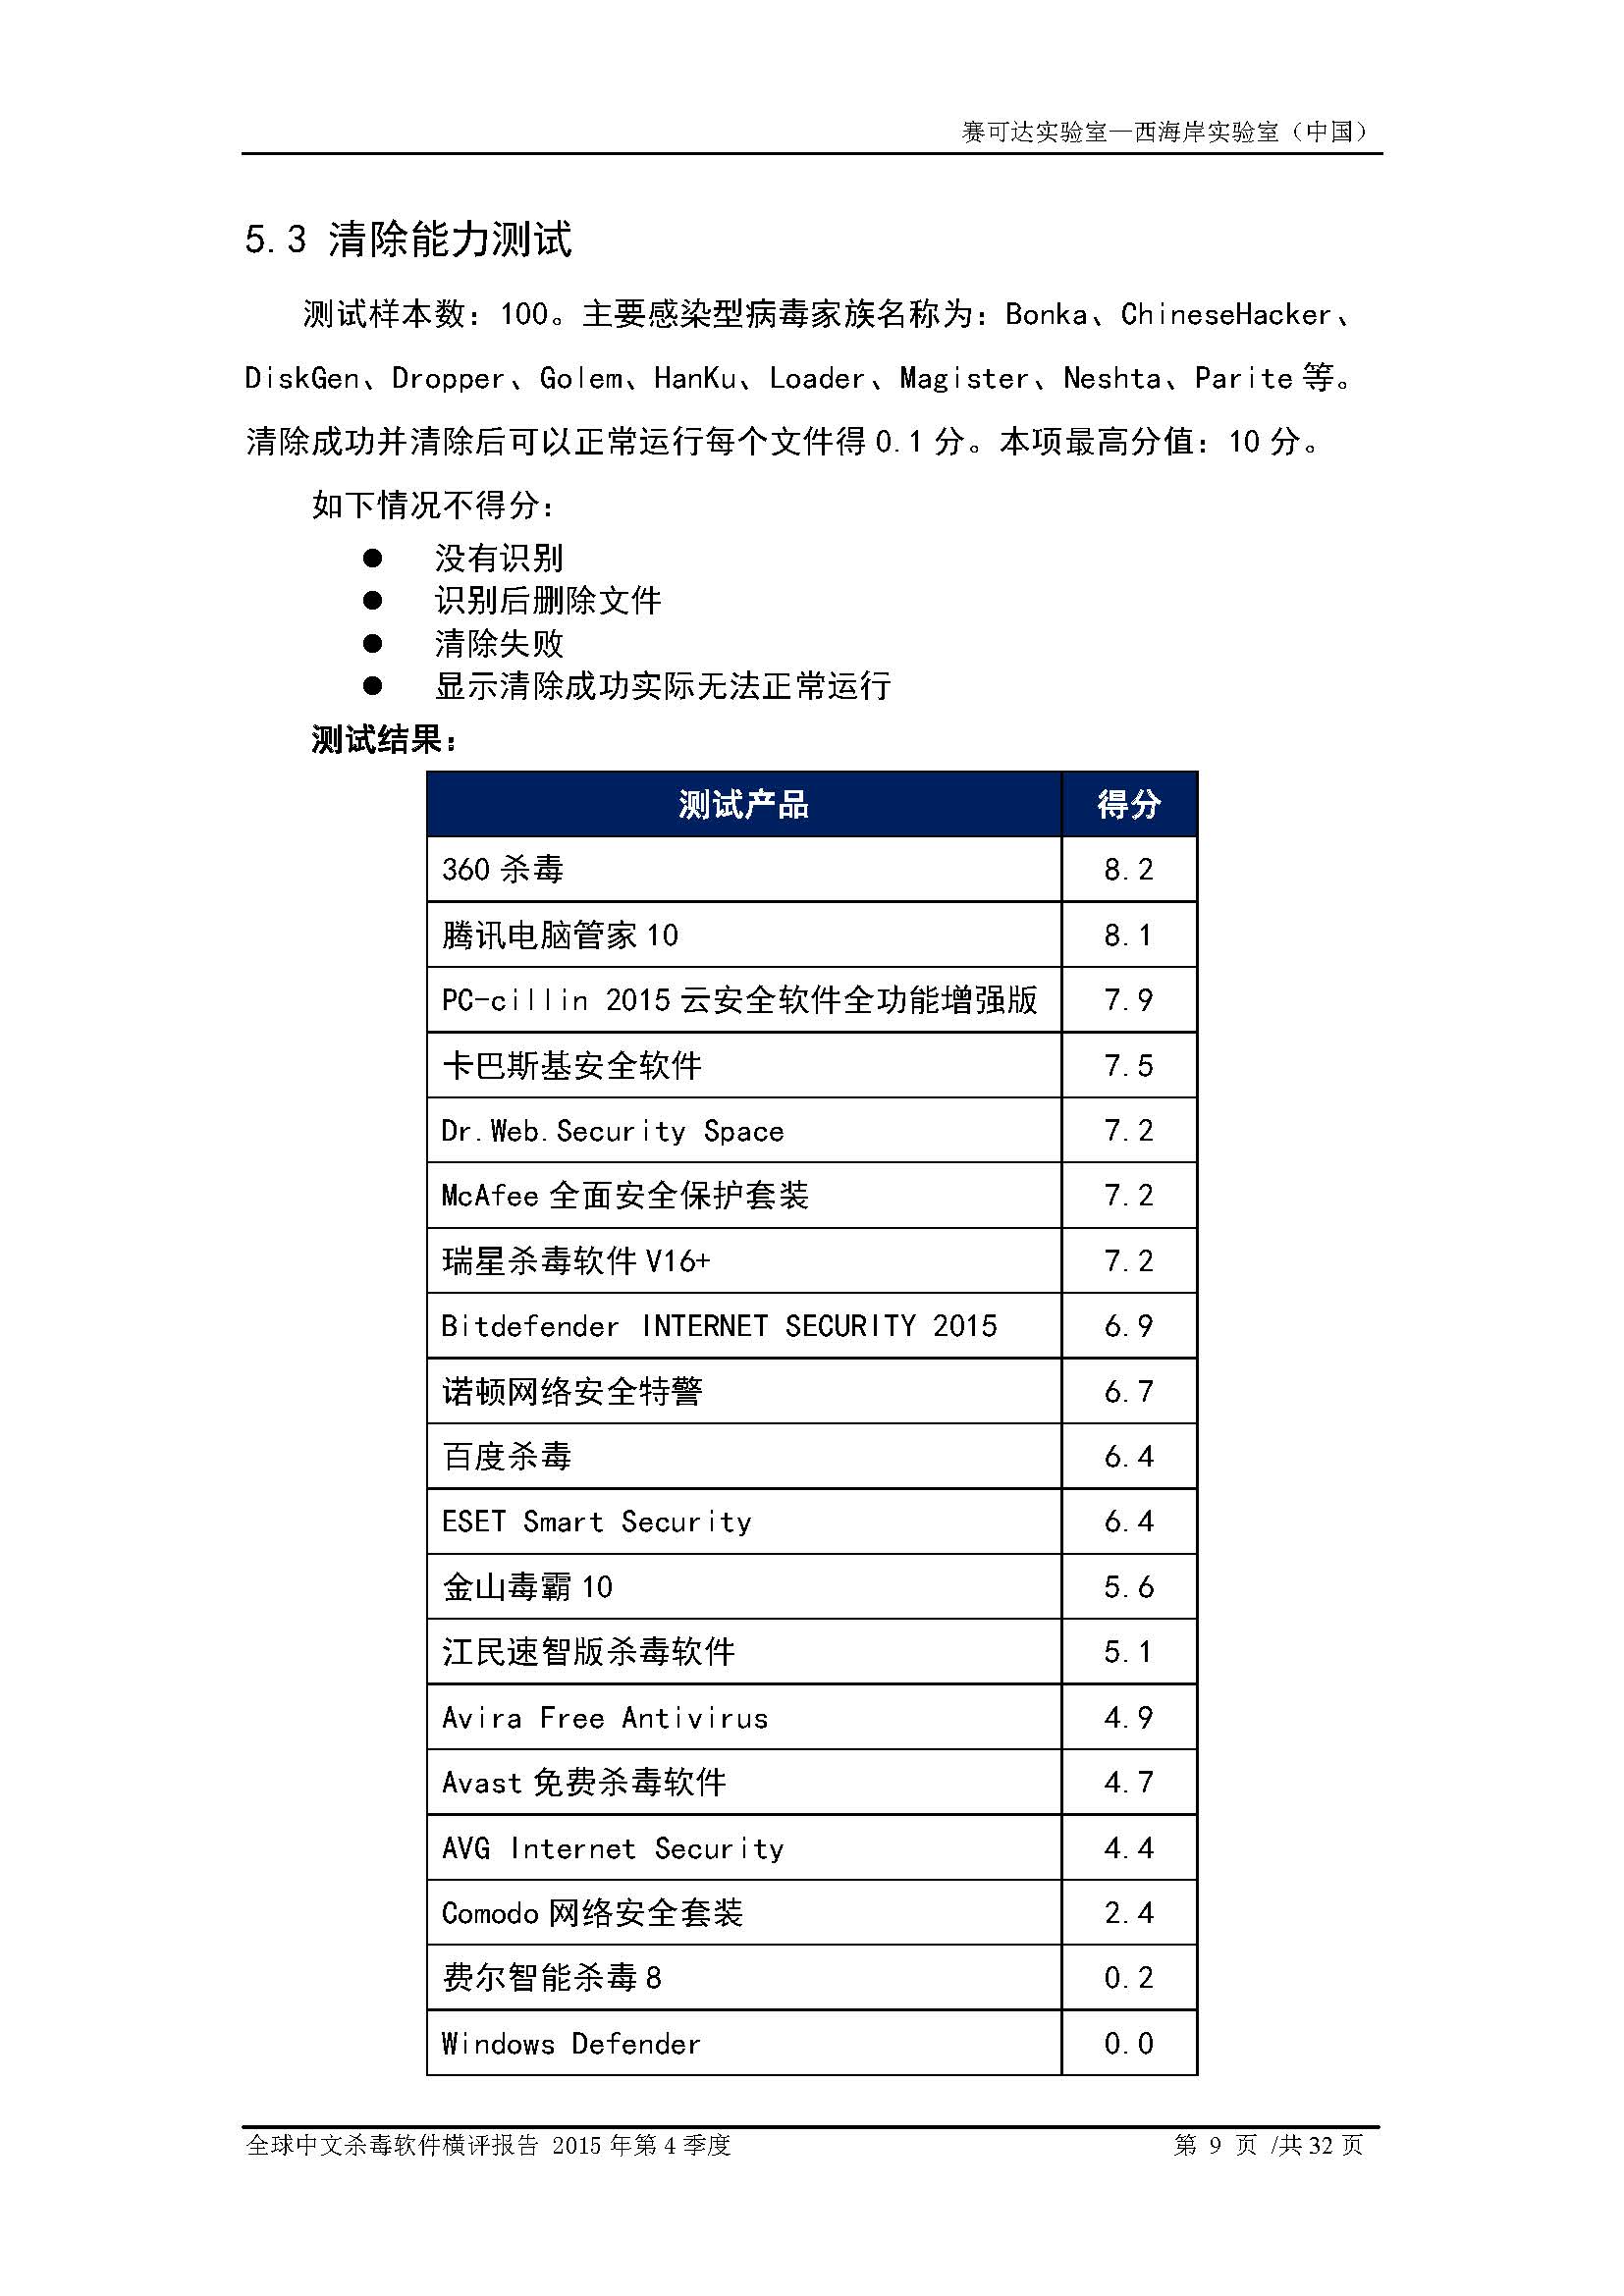 中文PC杀毒软件横评测试报告- Windows 8.1【中文版】.pdf (_Page_11.jpg